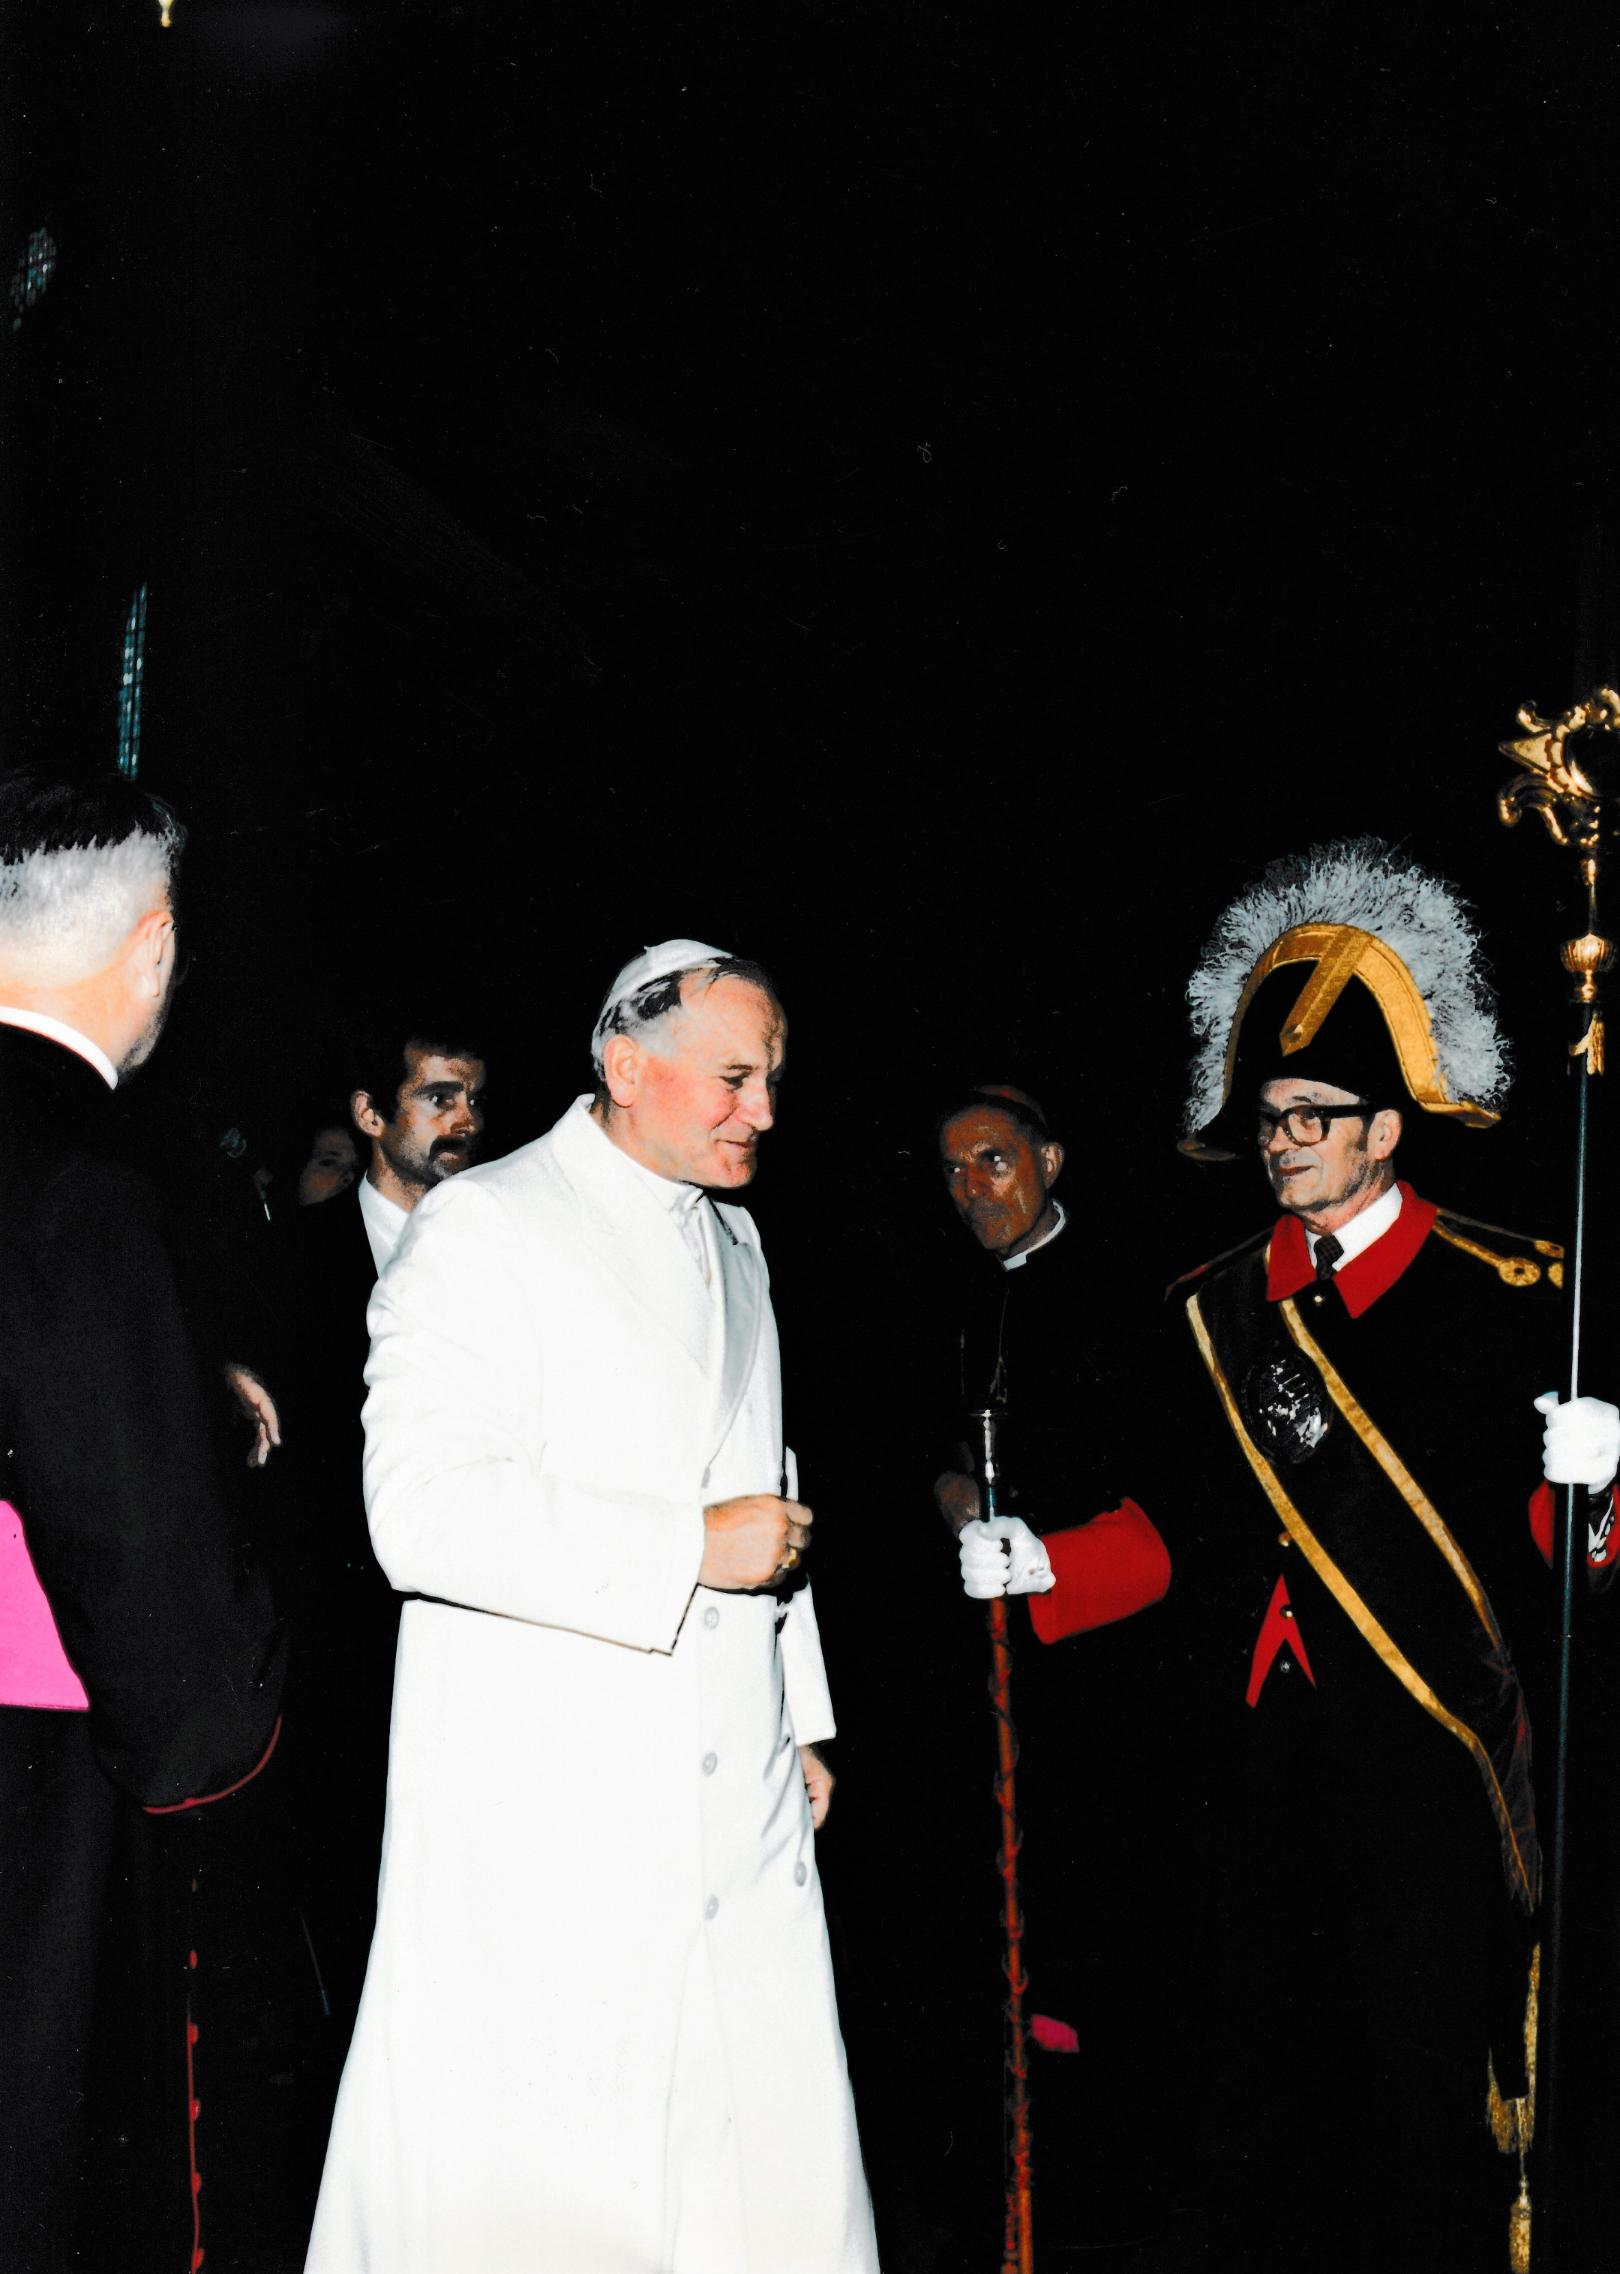 Papst Johannes Paul II mit Mainzer Domschweitzern (c) Bistum Mainz